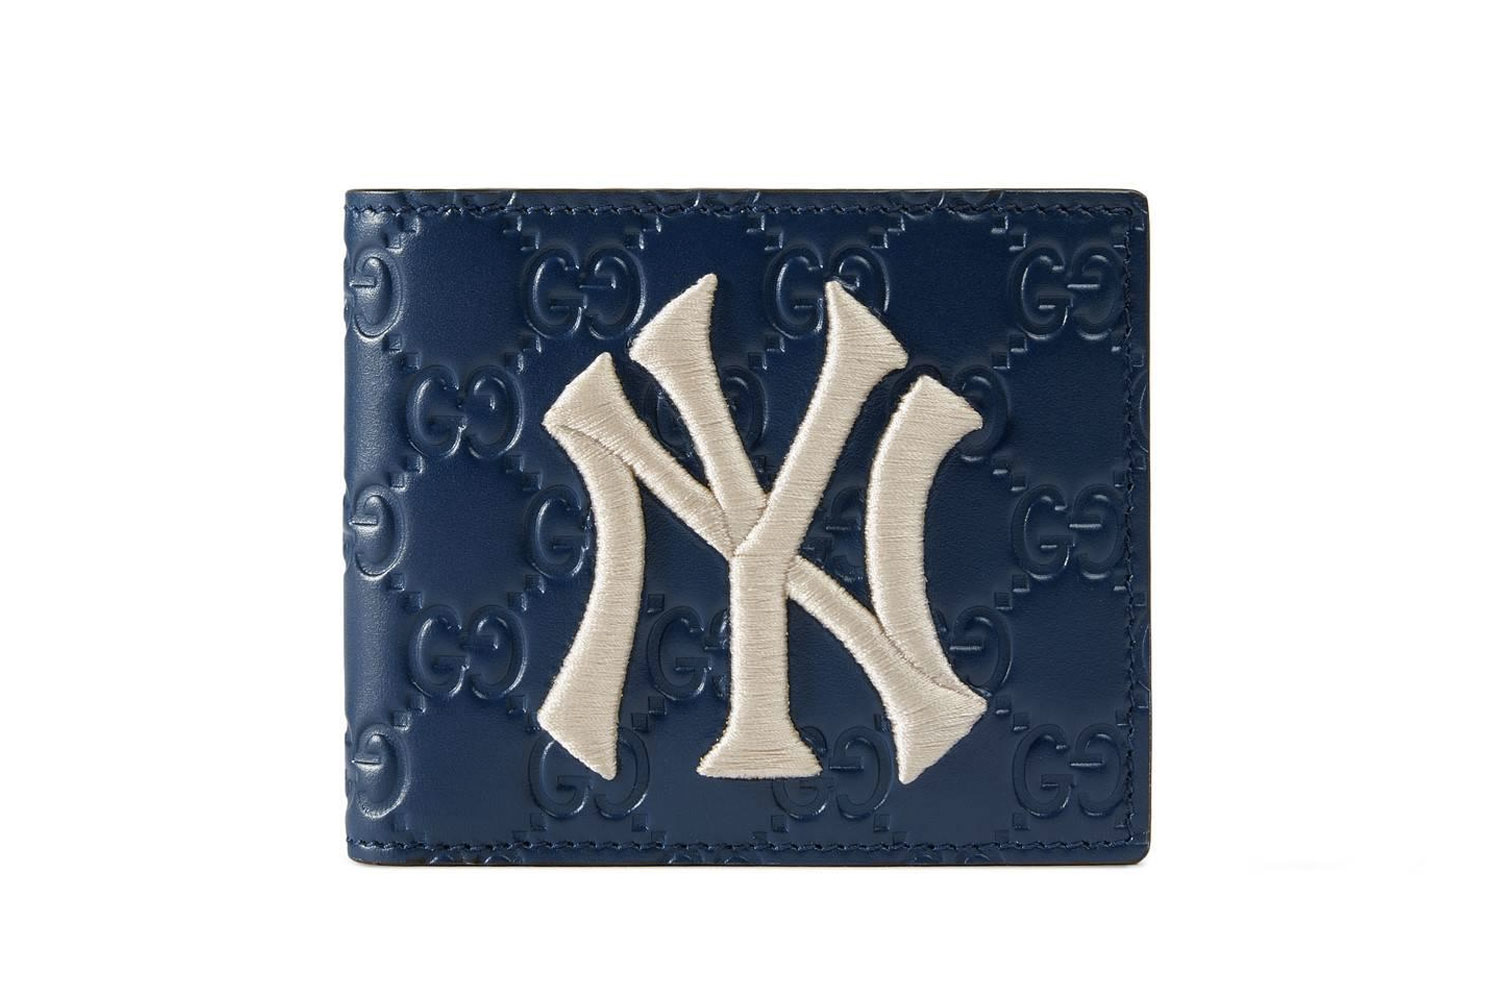 Gucci NY Yankees Patch Wallet Blue MLB Baseball Collaboration bi fold